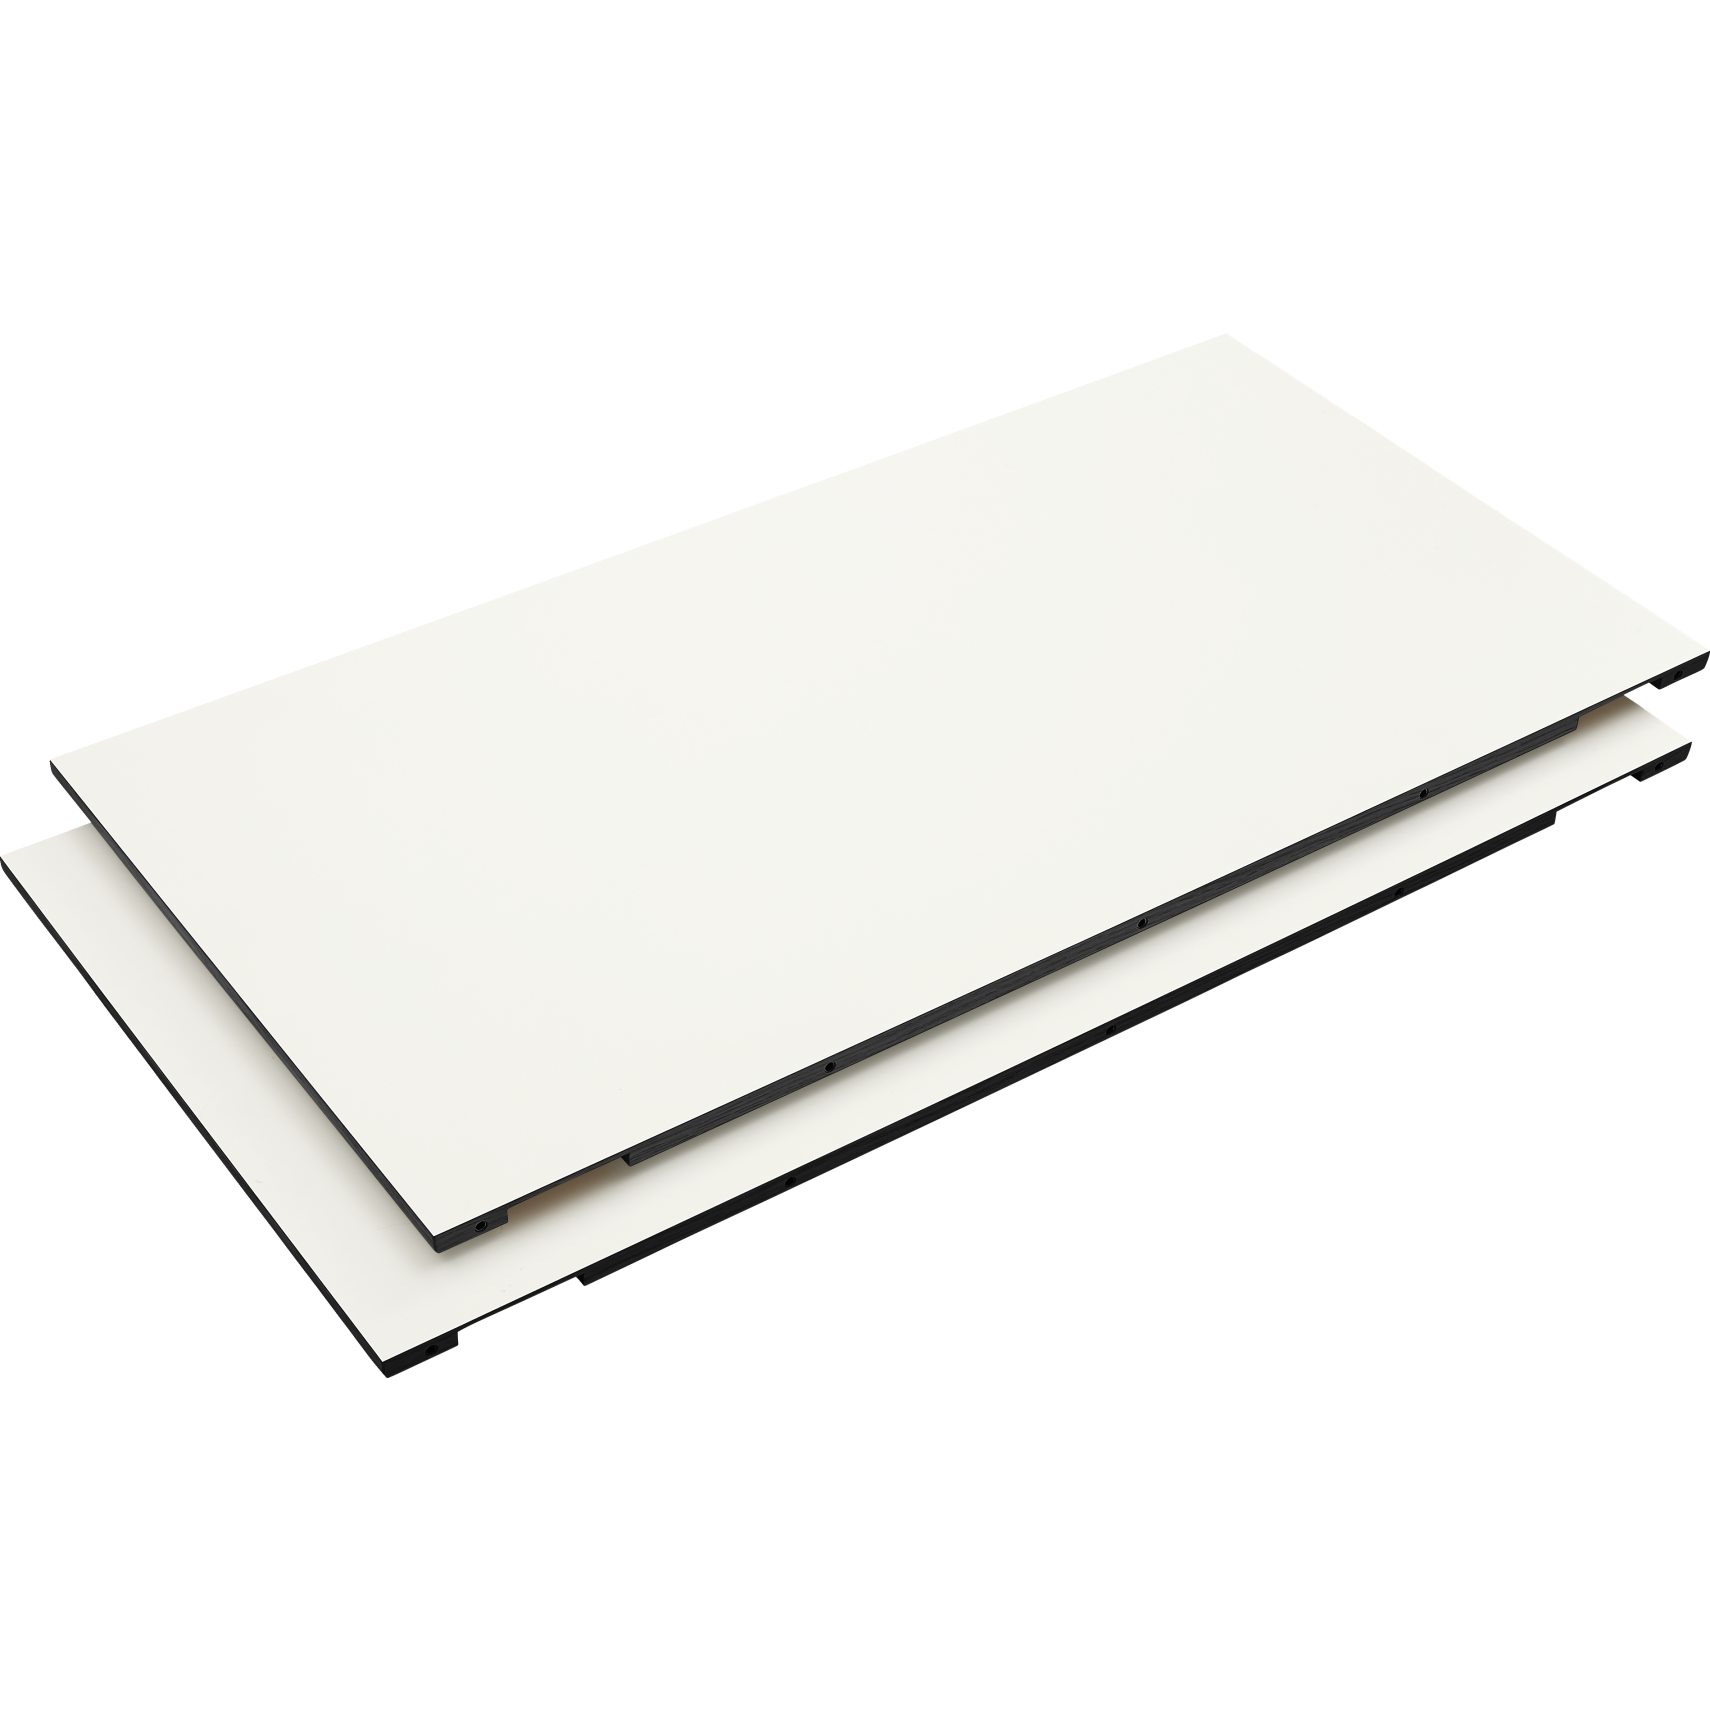 Big Iläggsplatta 51 x 1.5 x 100 cm - 101 White HPL laminat, kant i svartbetsad mattlackad ek och 2 st